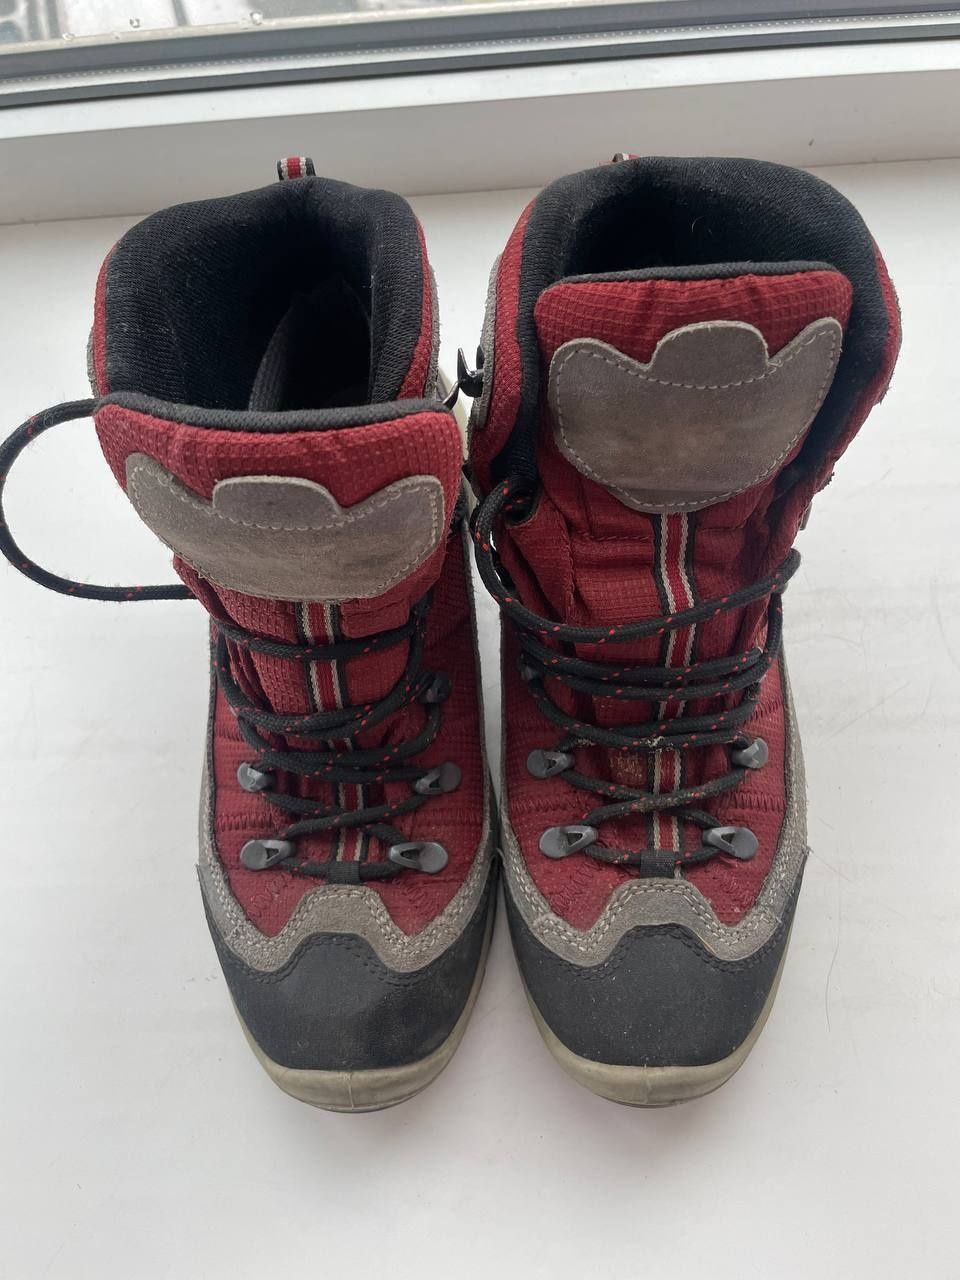 Ботинки сапоги зимние осенние мужские кожаные 41 размер.